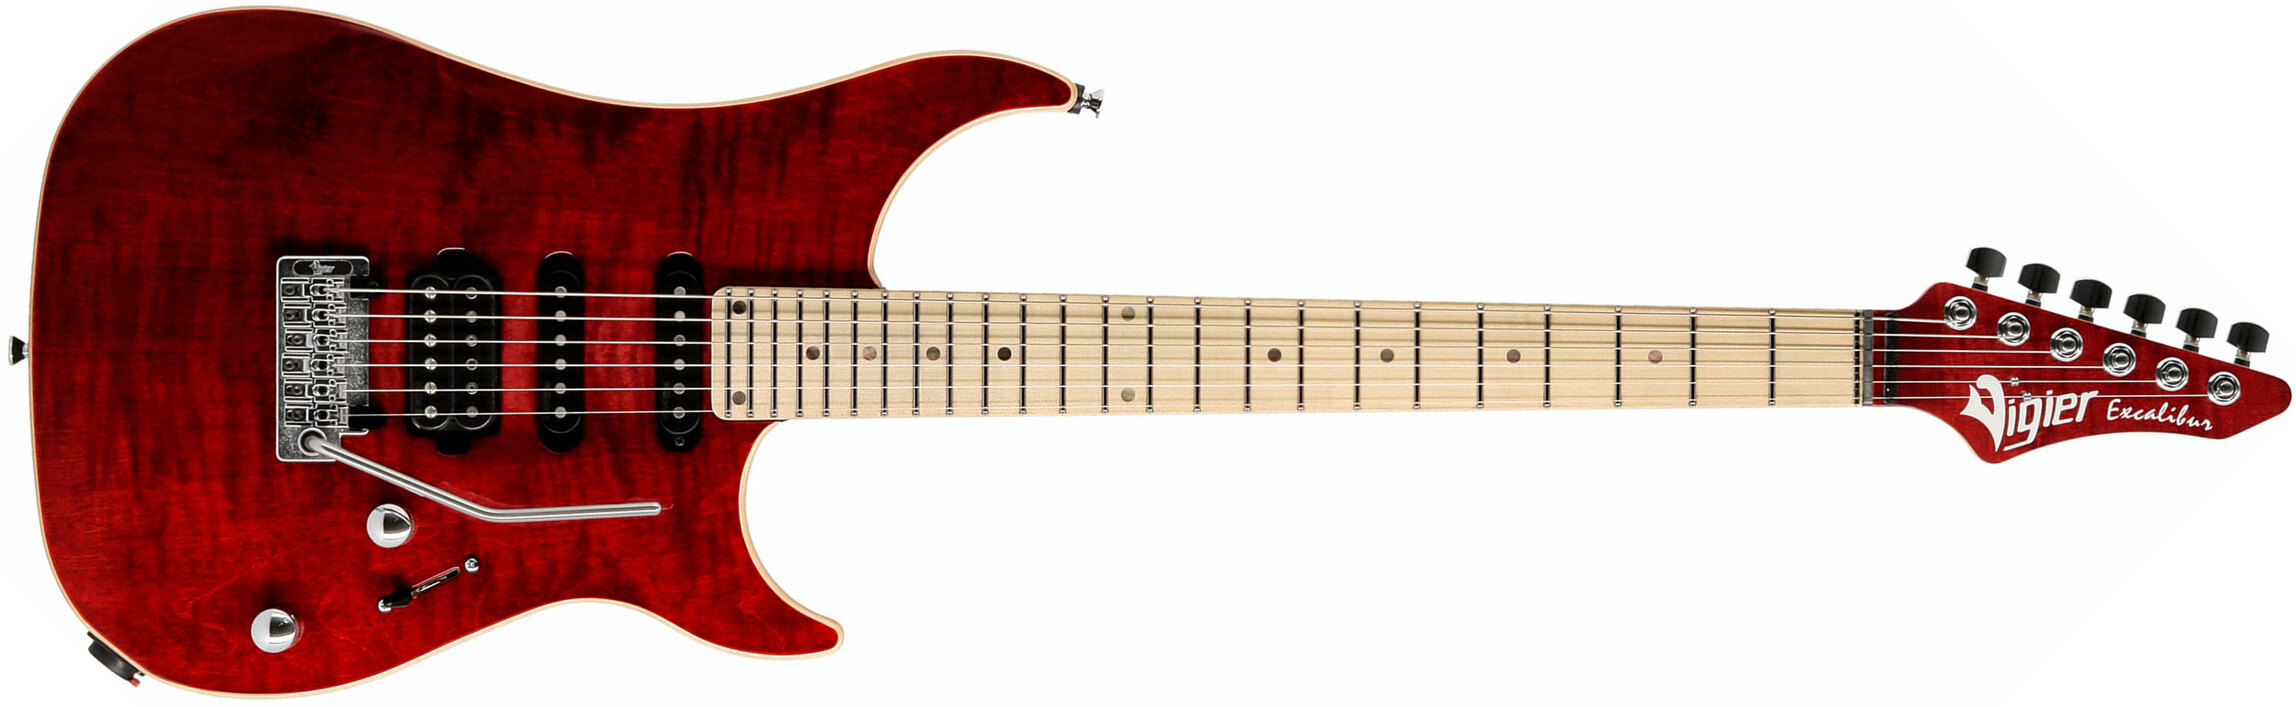 Vigier Excalibur Ultra Blues Hss Trem Mn - Ruby - Guitarra eléctrica con forma de str. - Main picture